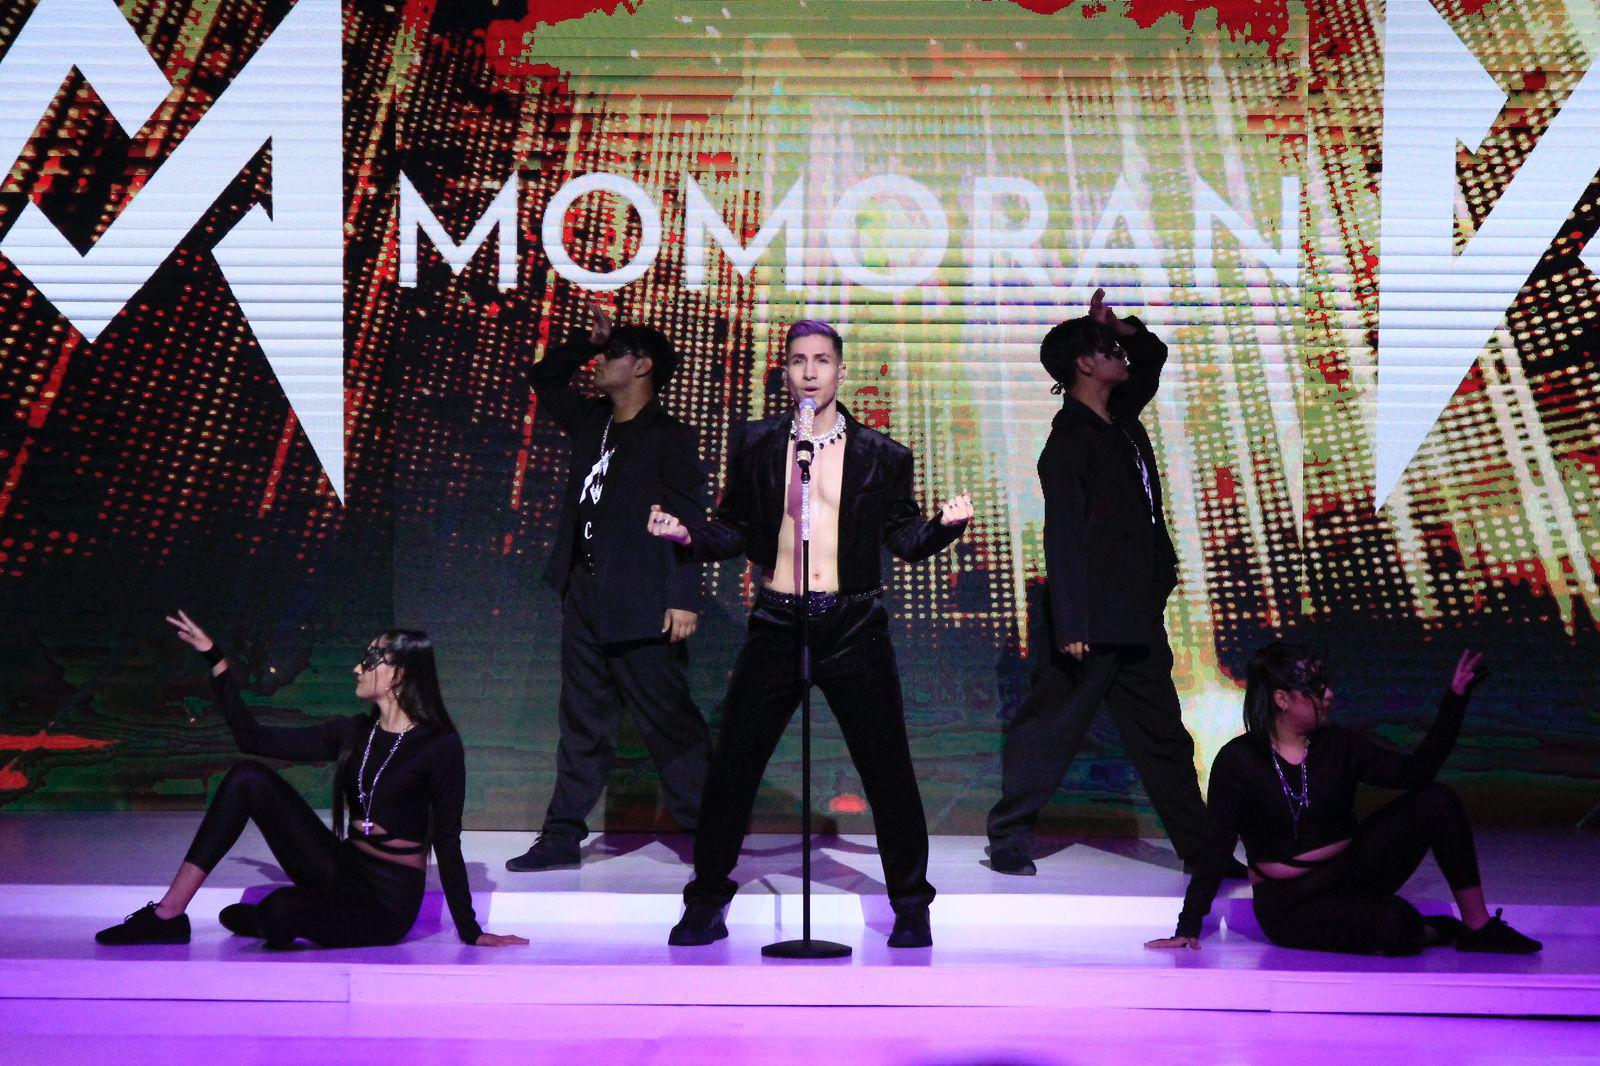 $!El cantante mazatleco Momorán puso el toque musical al evento.